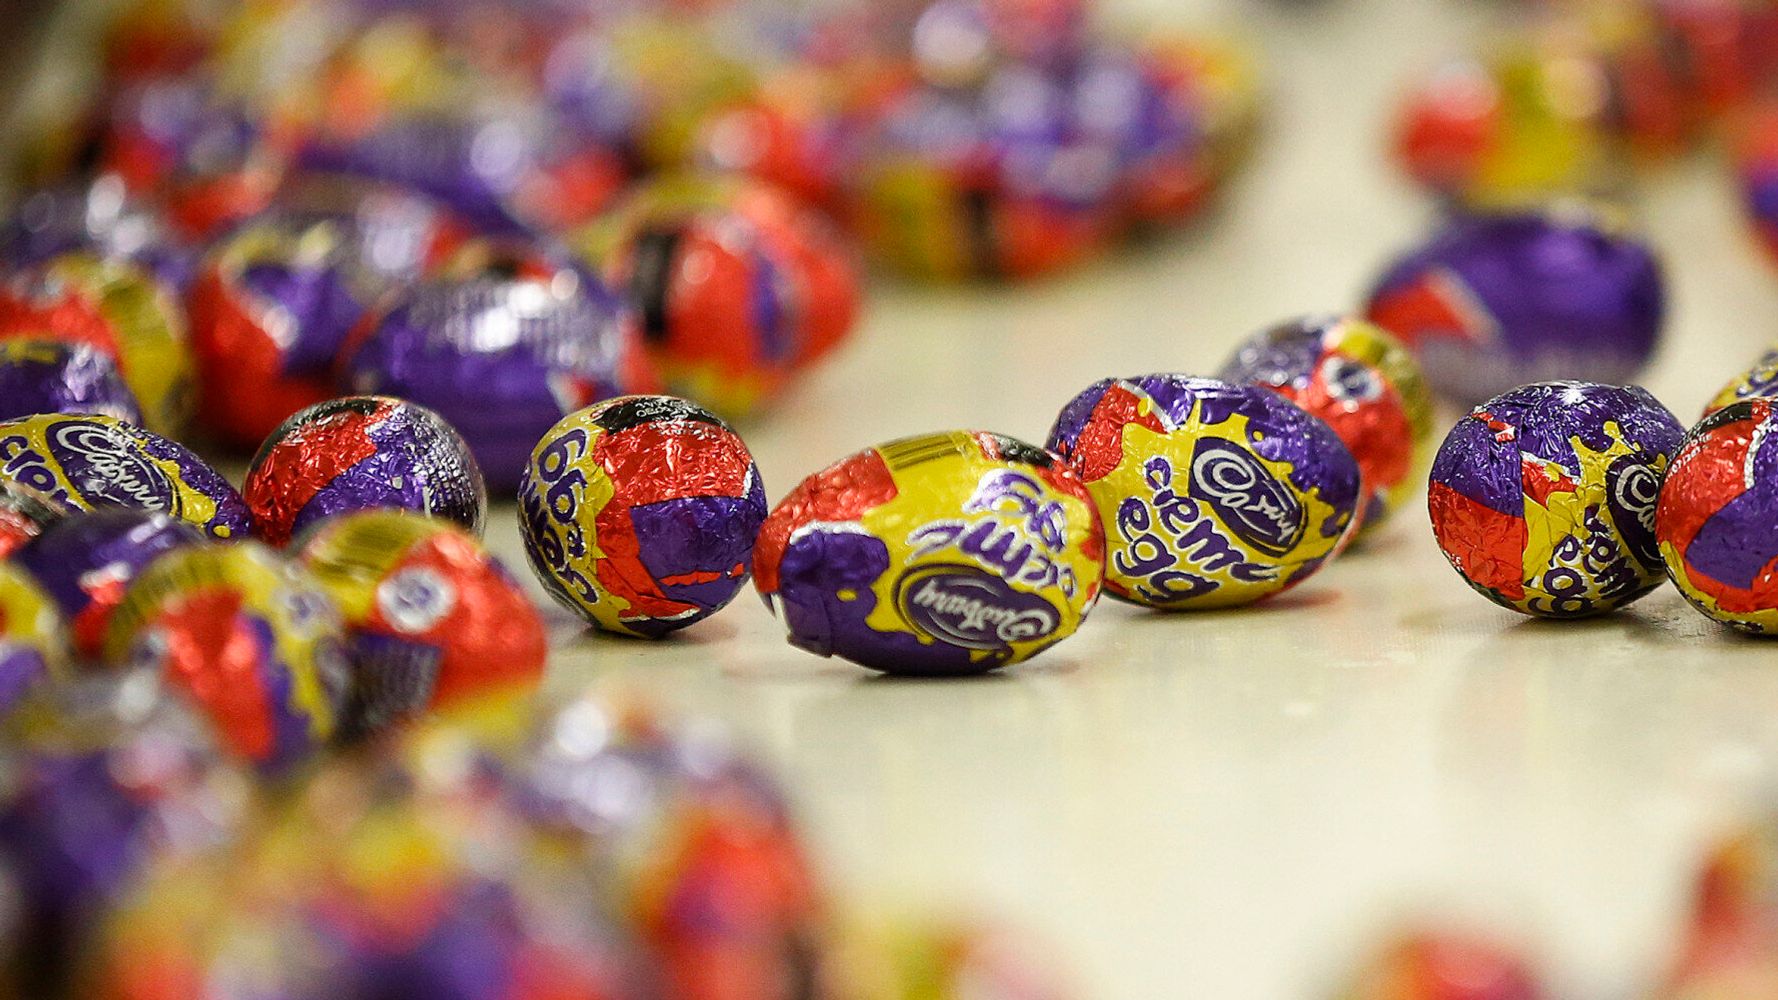 Cadbury Creme Egg Recipe 'Secretly' Changed. So We Did A Taste Test